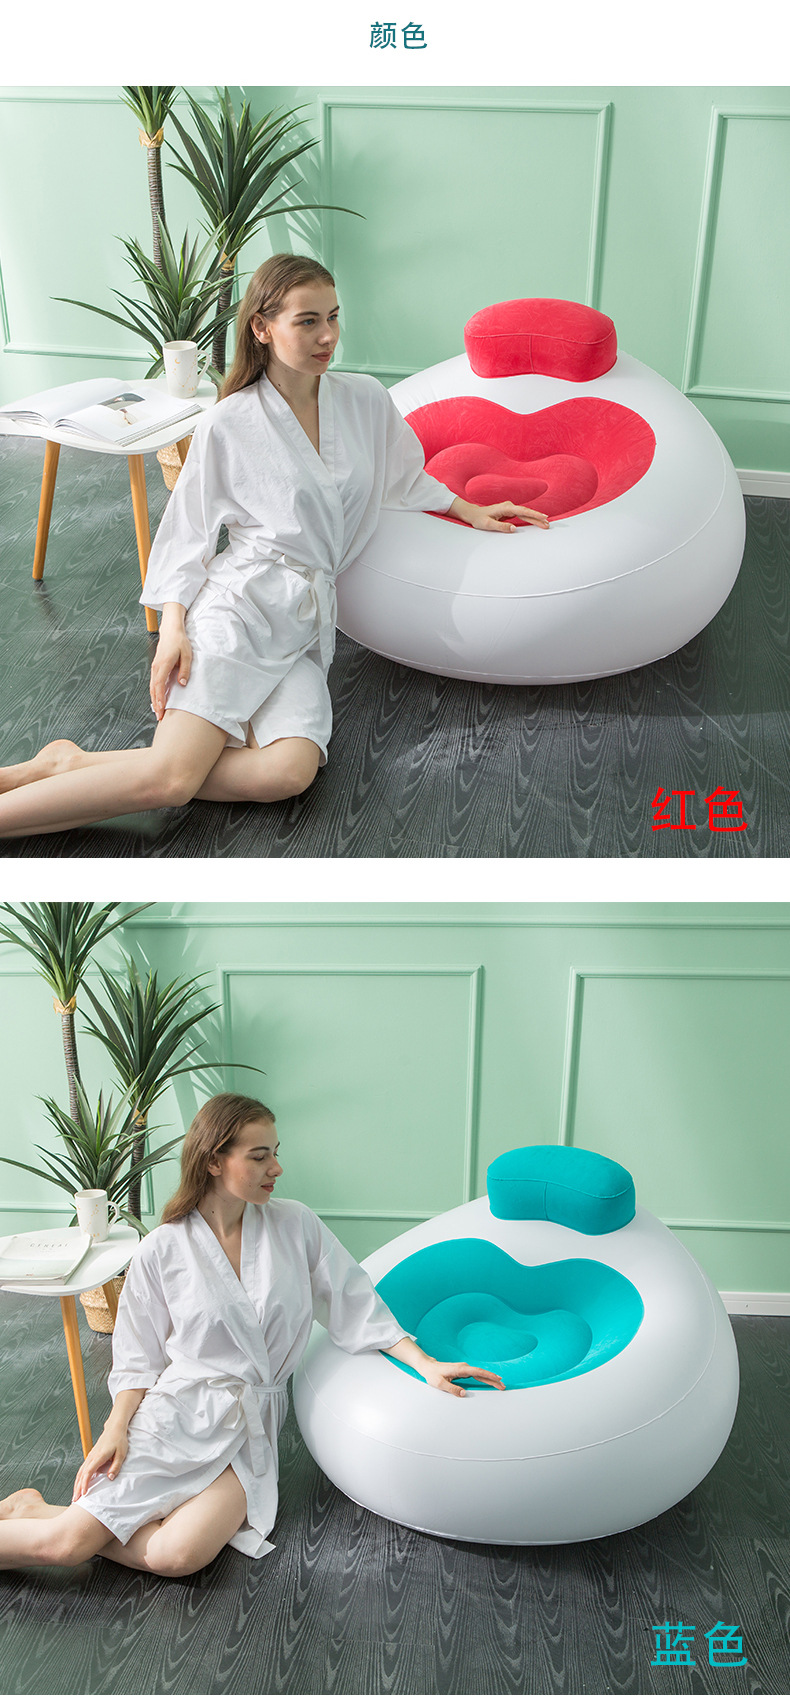 新款充气植绒懒人沙发爱心造型自拍摆件客厅休闲单人椅户外沙发床详情7